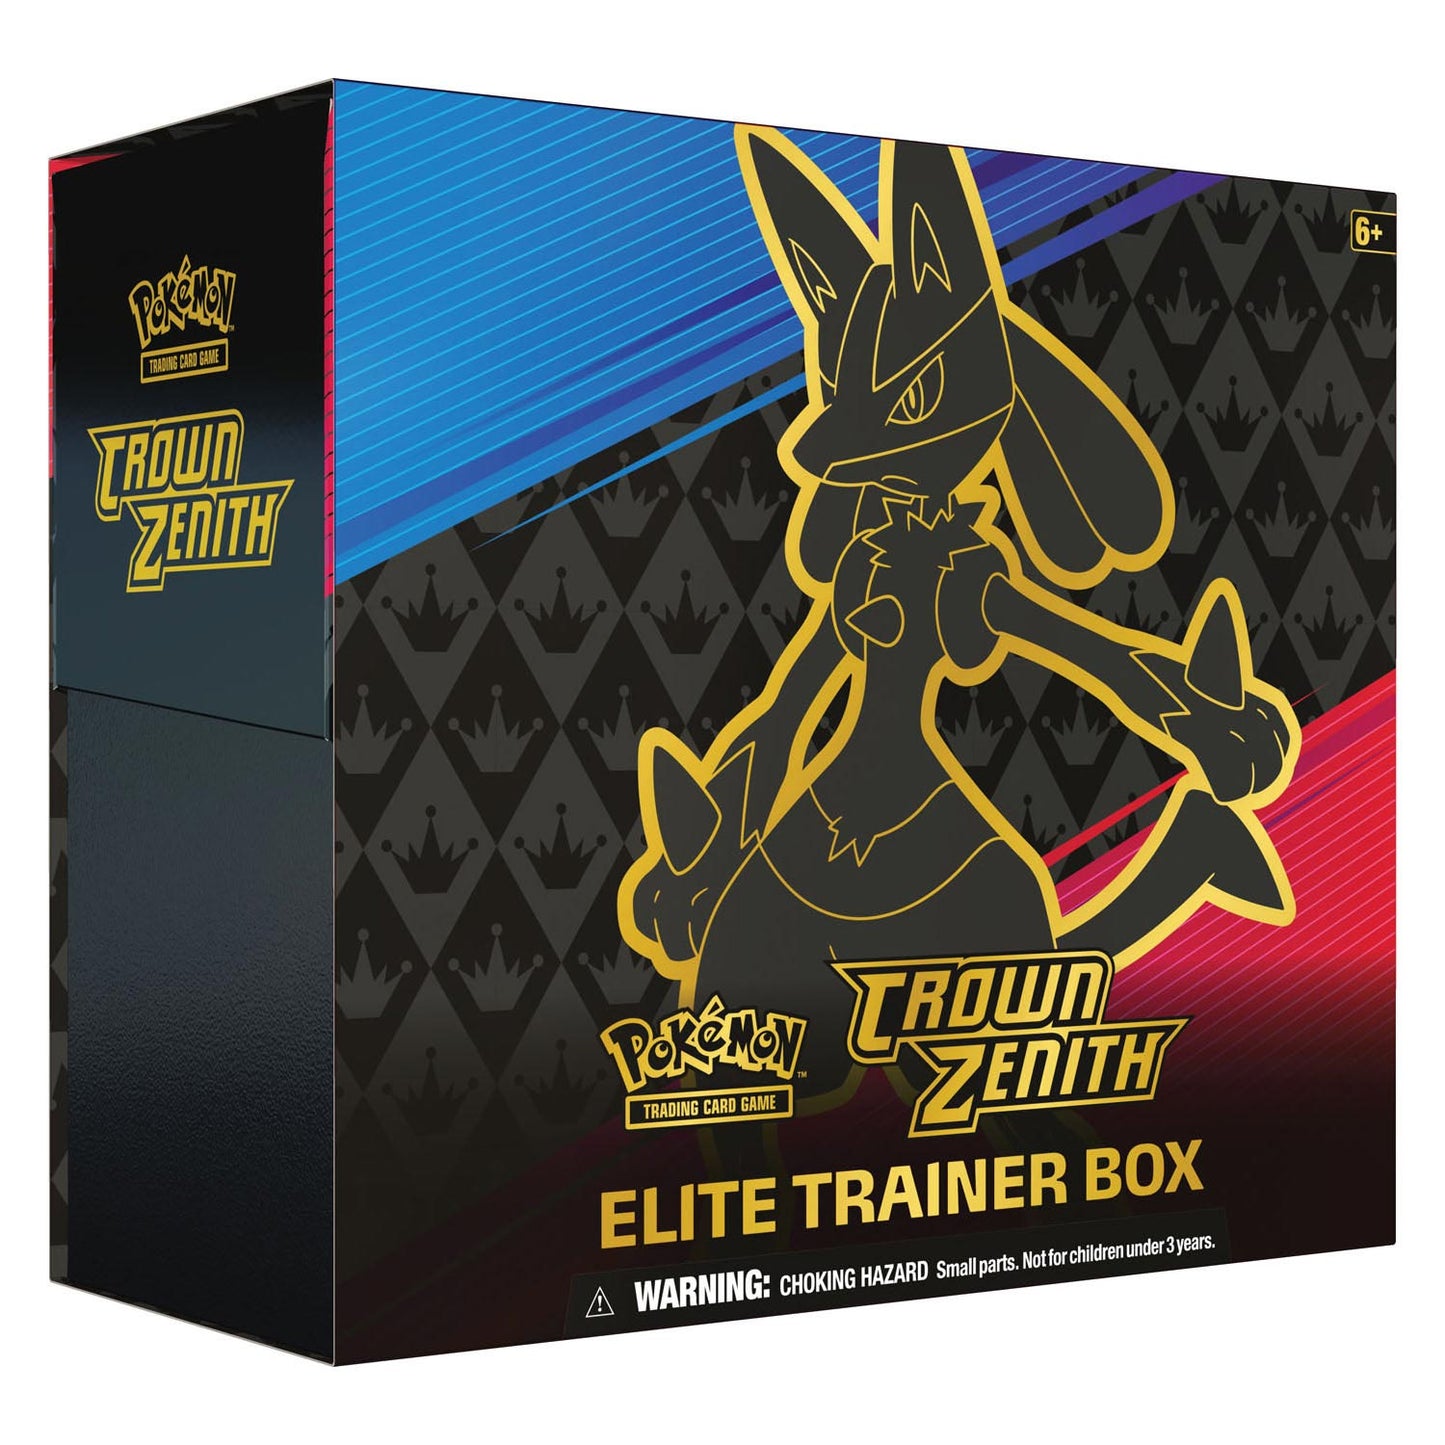 Pokémon Elite Trainer Box - Crown Zenith